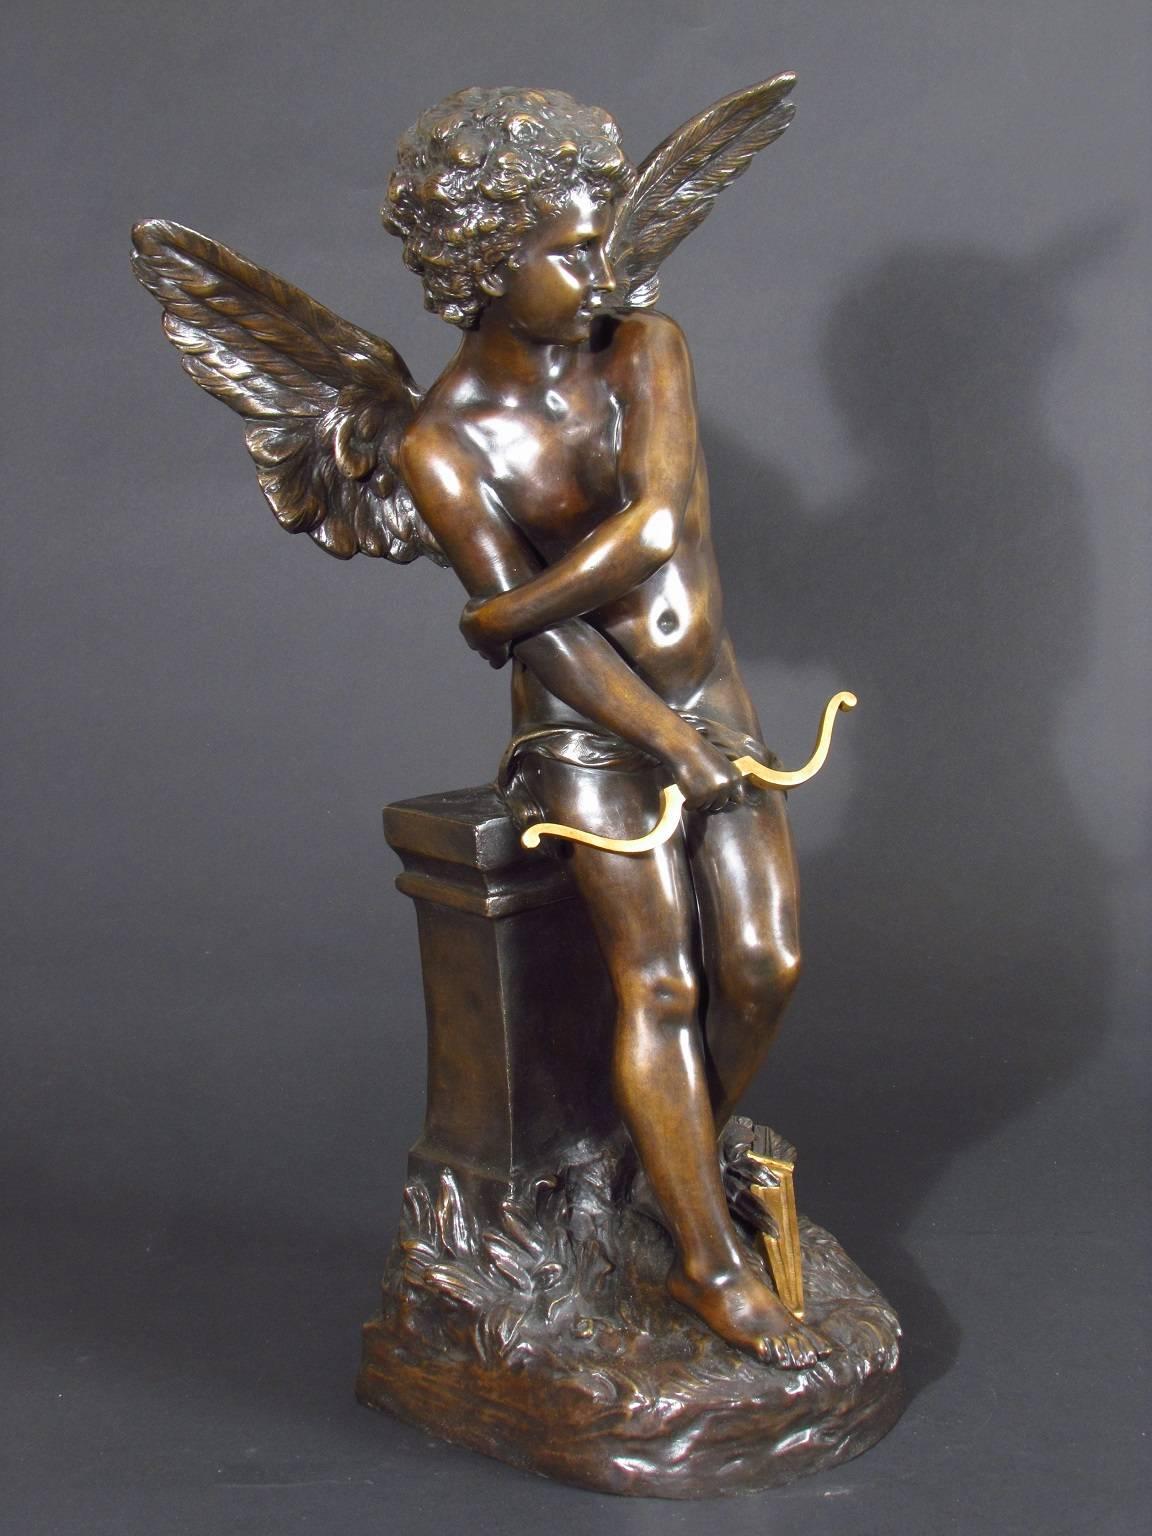 Amour - Romantic Sculpture by Hippolyte François Moreau